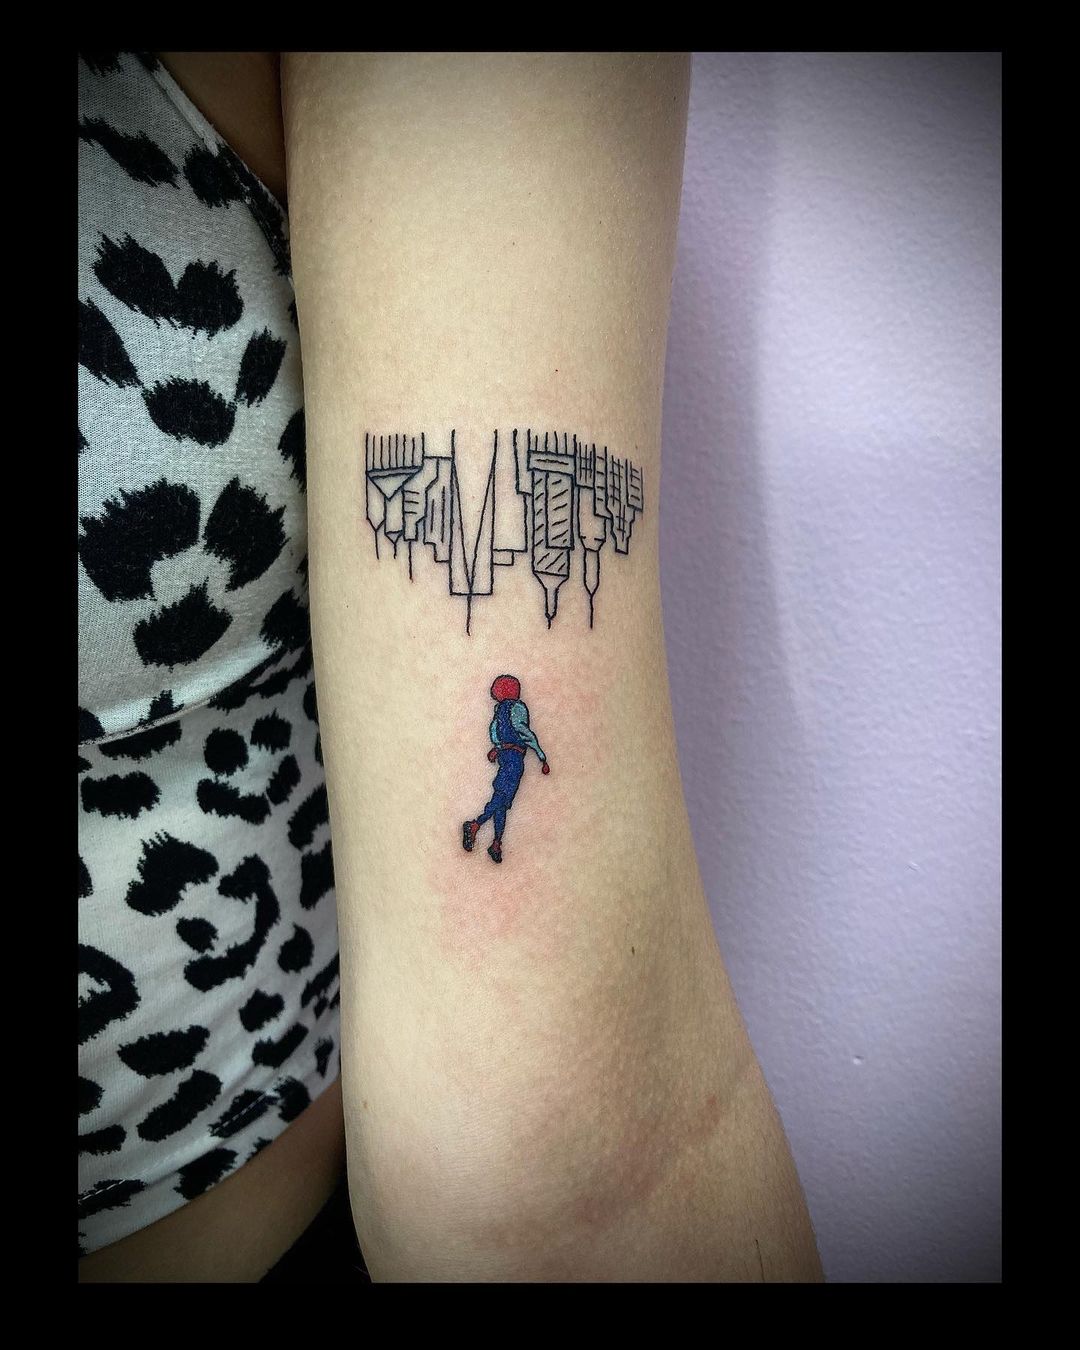 Tattoo idea : r/Spiderman